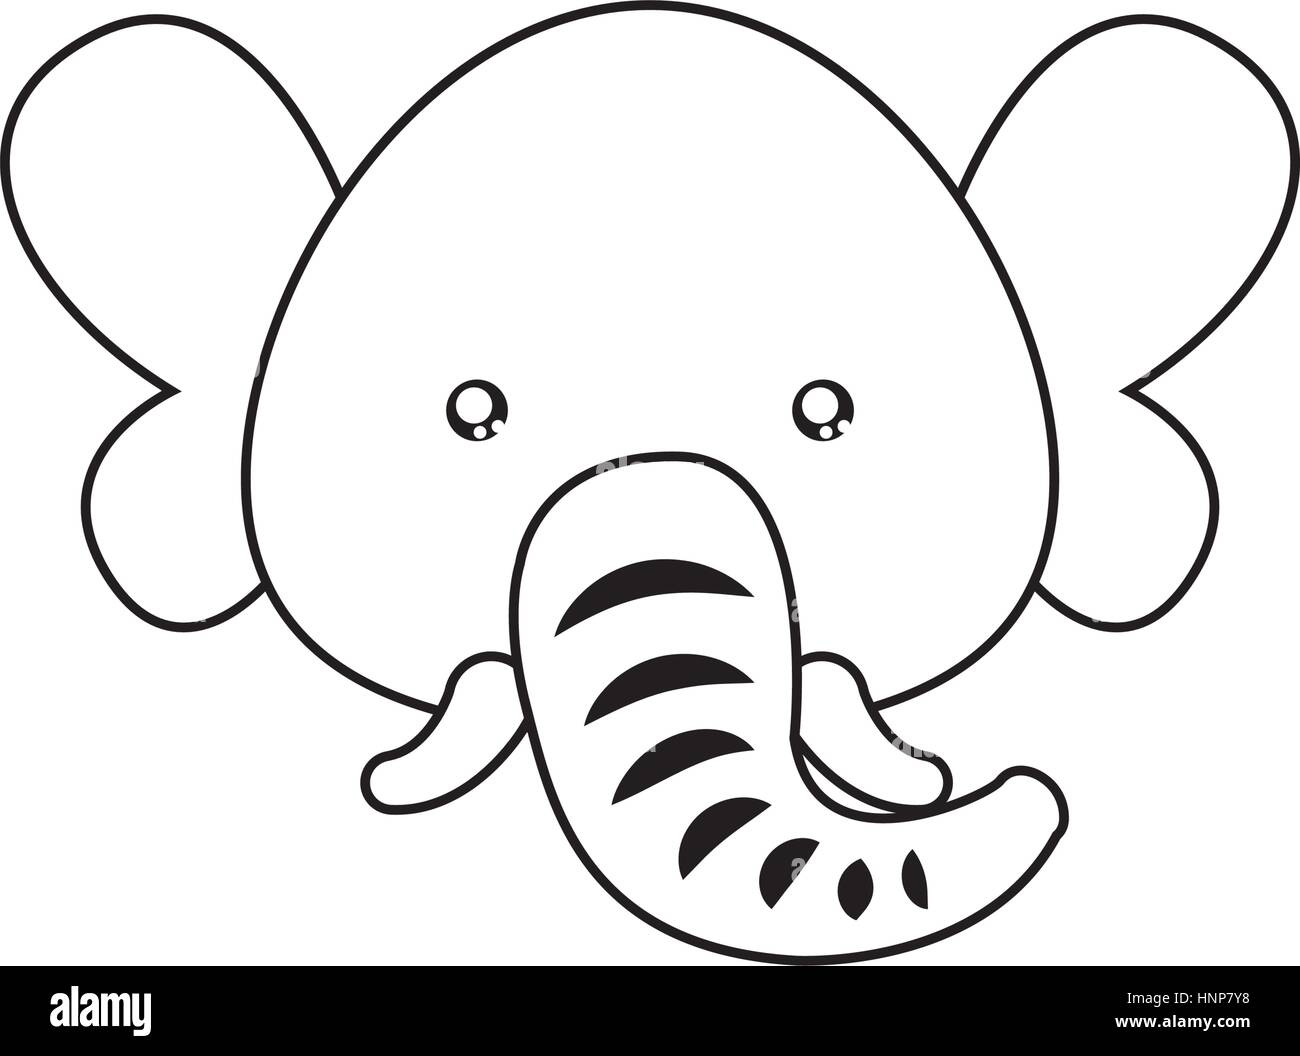 Elefante Faccia Di Disegno Immagine E Vettoriale Alamy